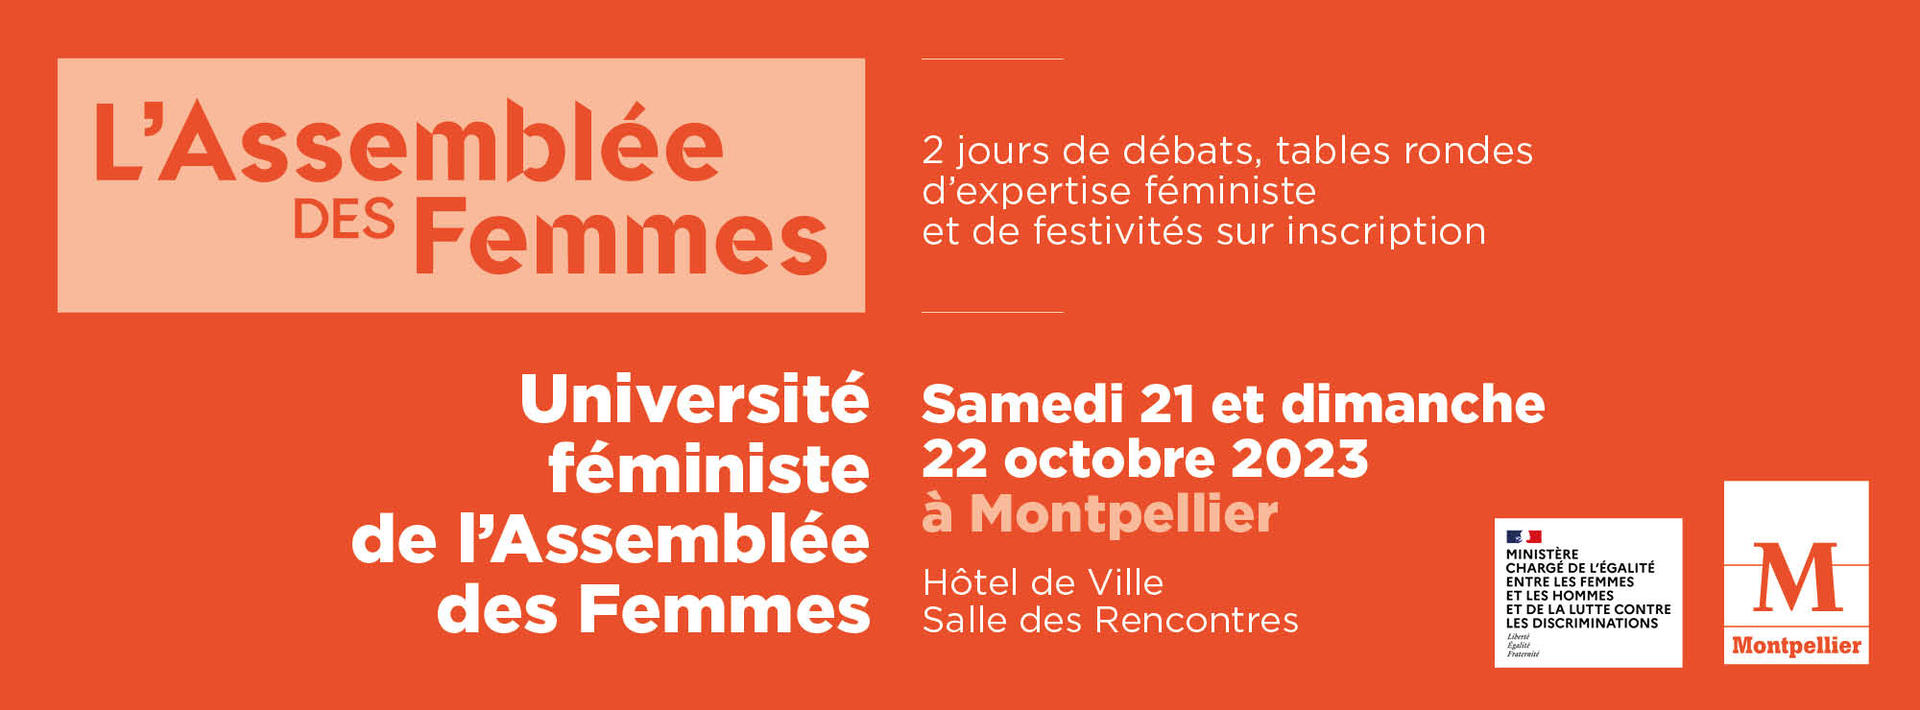 Annonce de l'Université féministe